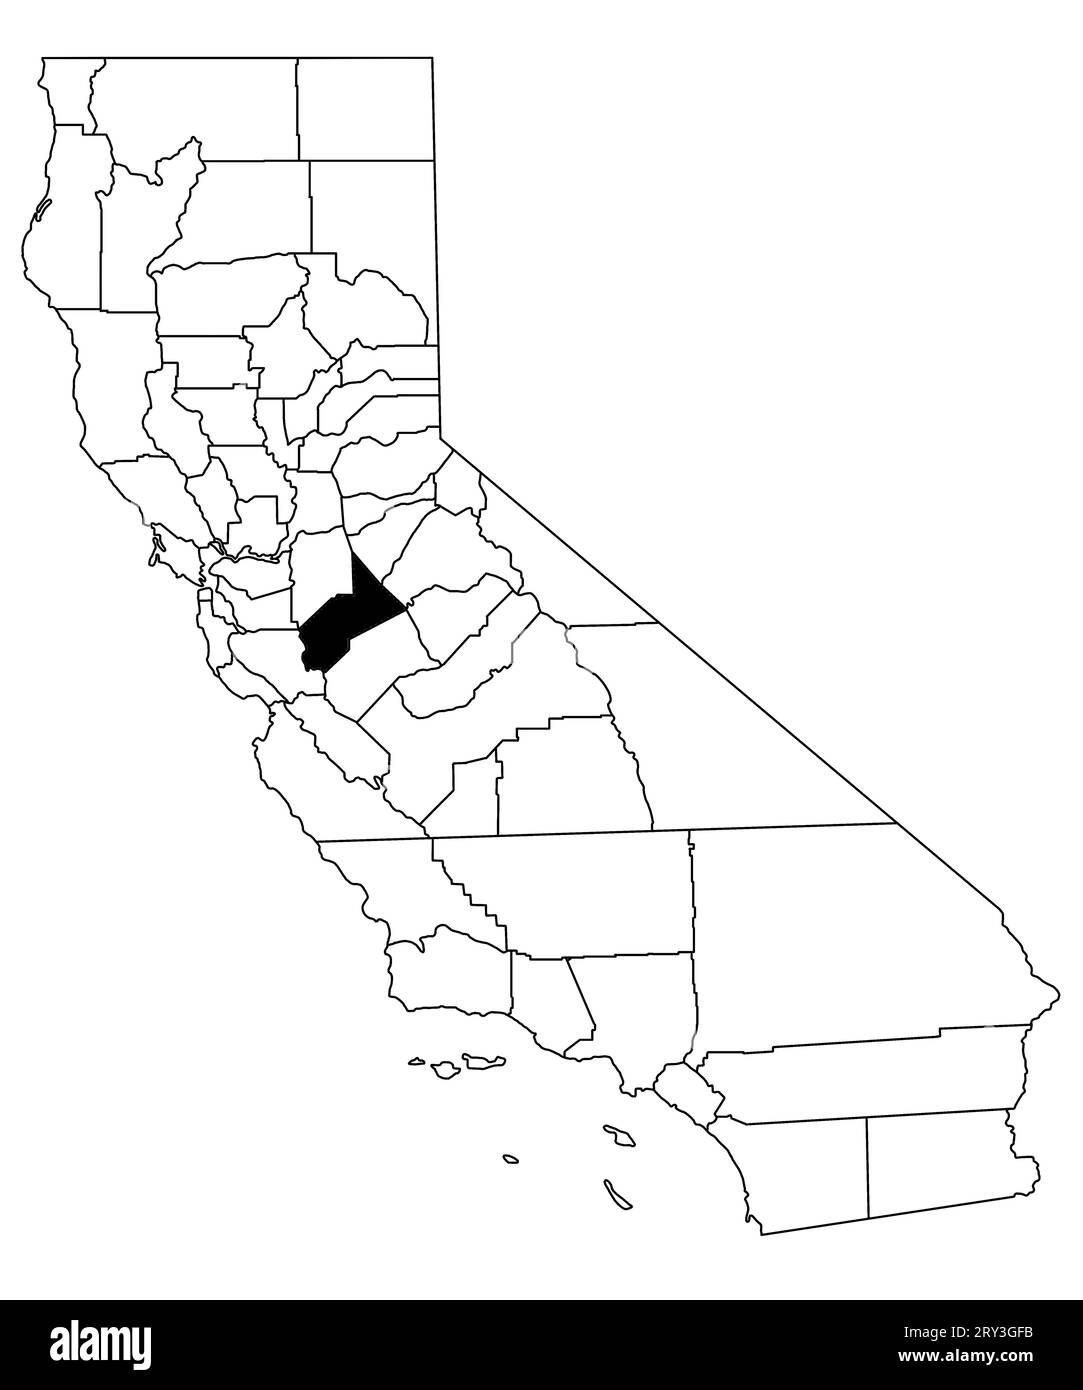 Karte von stanislaus County im kalifornischen Bundesstaat auf weißem Hintergrund. Single County Karte, schwarz hervorgehoben auf der kalifornischen Karte. USA, USA Stockfoto